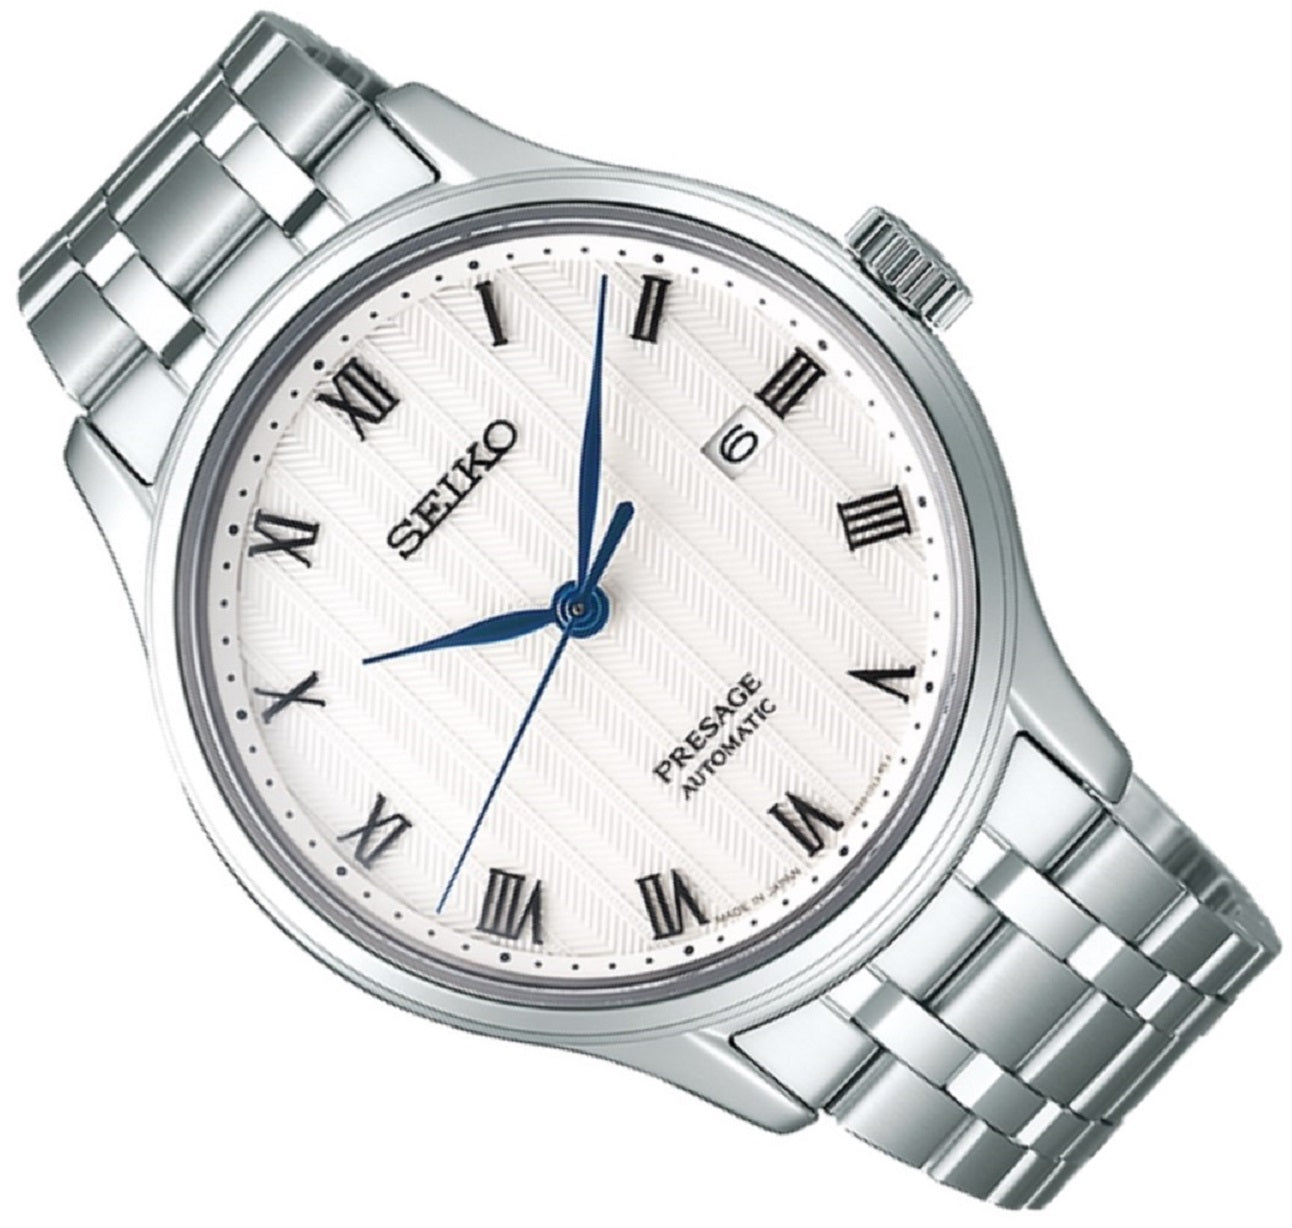 Seiko SRPC79J1 Presage Zen Garden Automatic Watch-Watch Portal Philippines